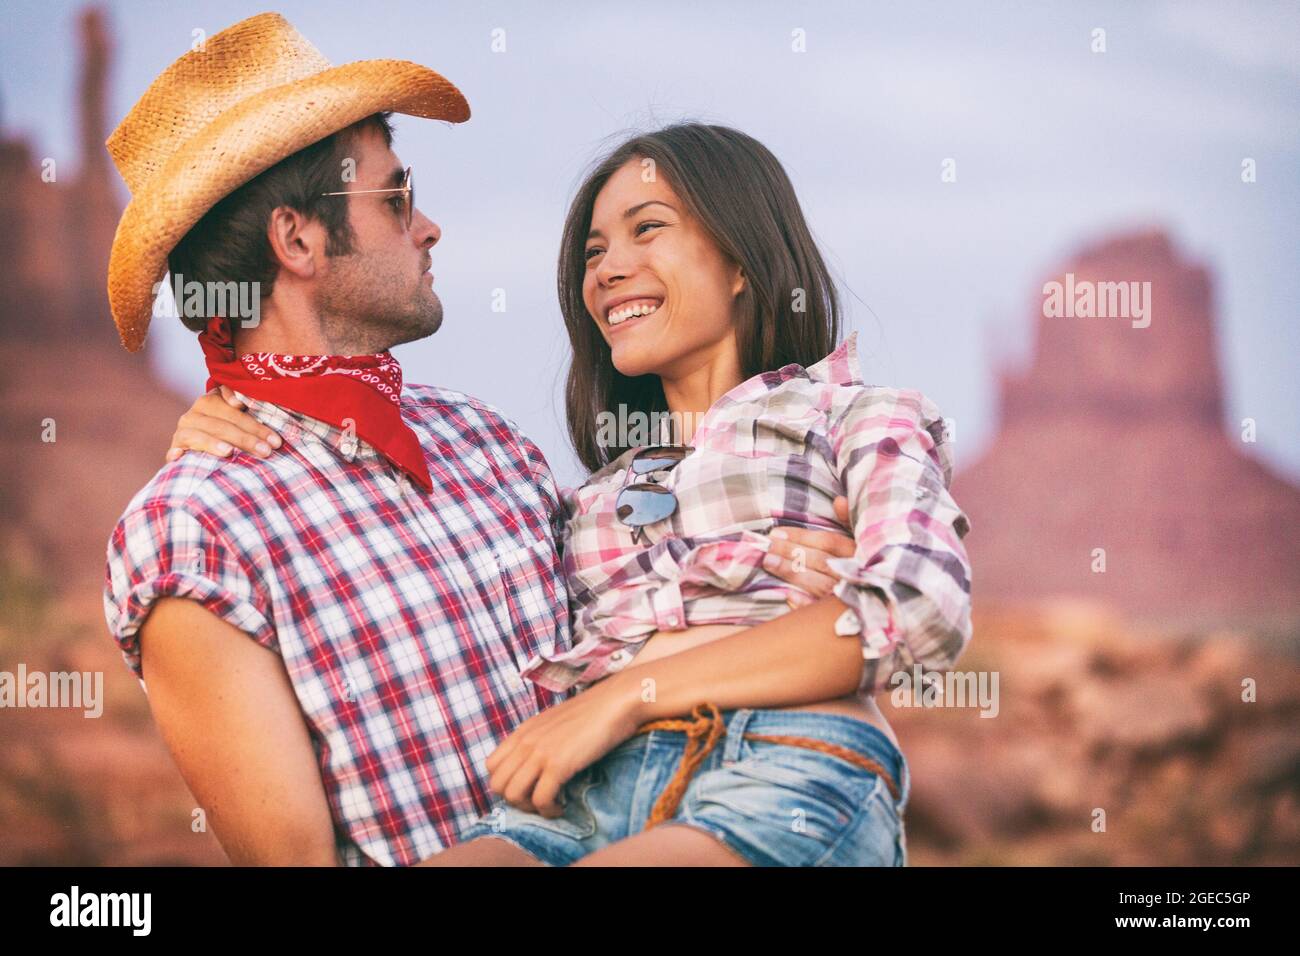 Vaqueros De Nuevo Mexico Fotos e Imágenes de stock - Alamy